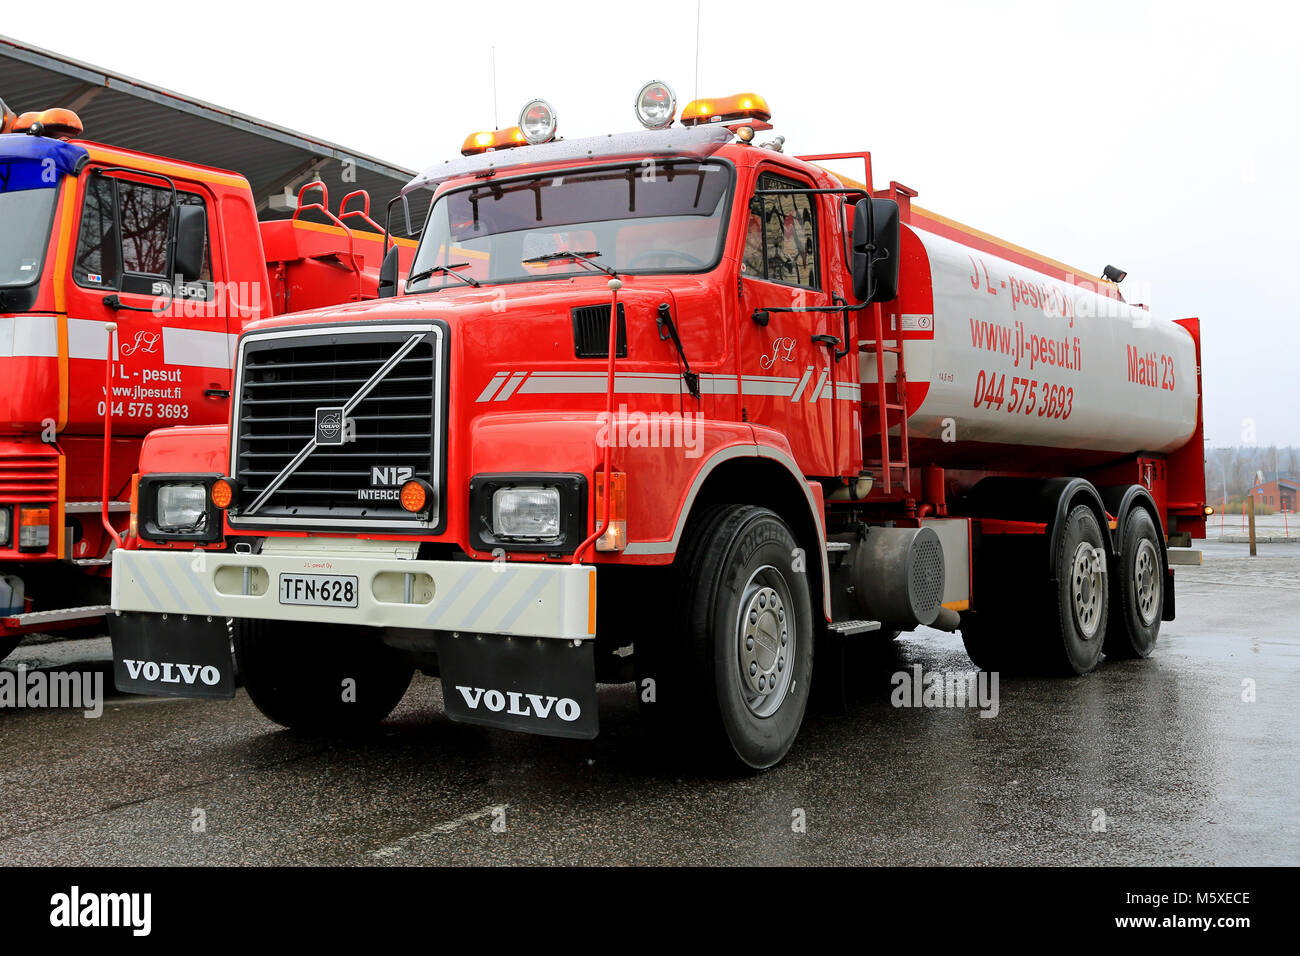 SALO, FINLANDE - le 12 avril 2015 : Volvo N12 année 1988 camion citerne utilisée pour le lavage industriel des services. Le réservoir d'eau a une capacité de 15000 litres. Banque D'Images